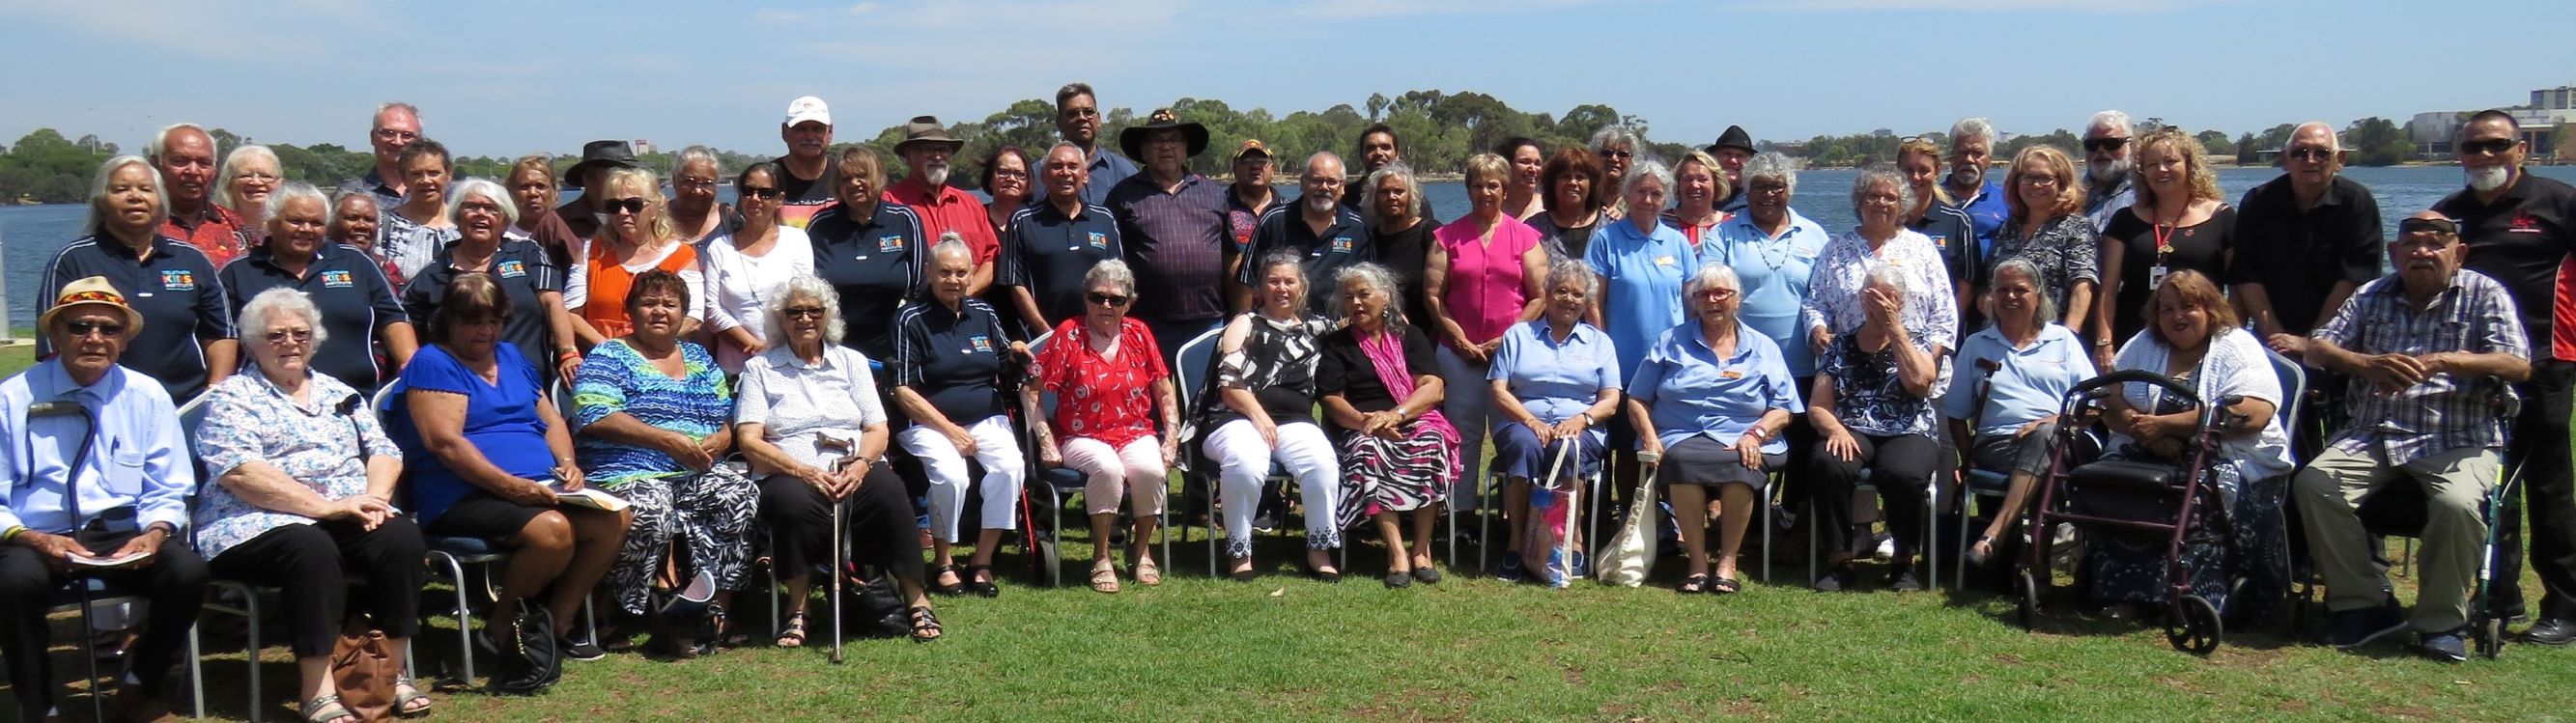 Elders Meeting attendees 2019